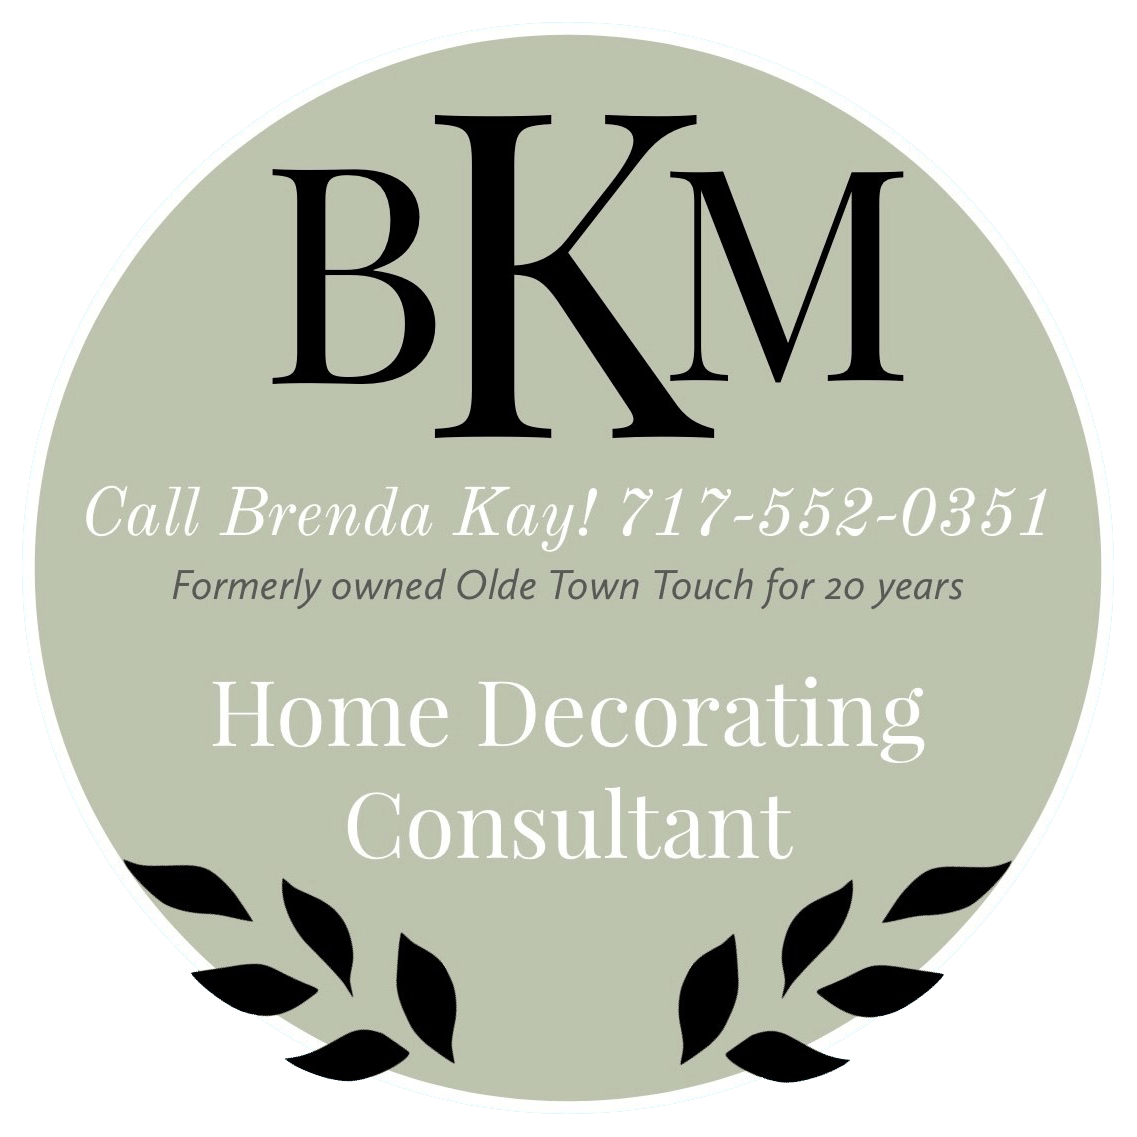 Call Brenda Kay! 717-552-0351